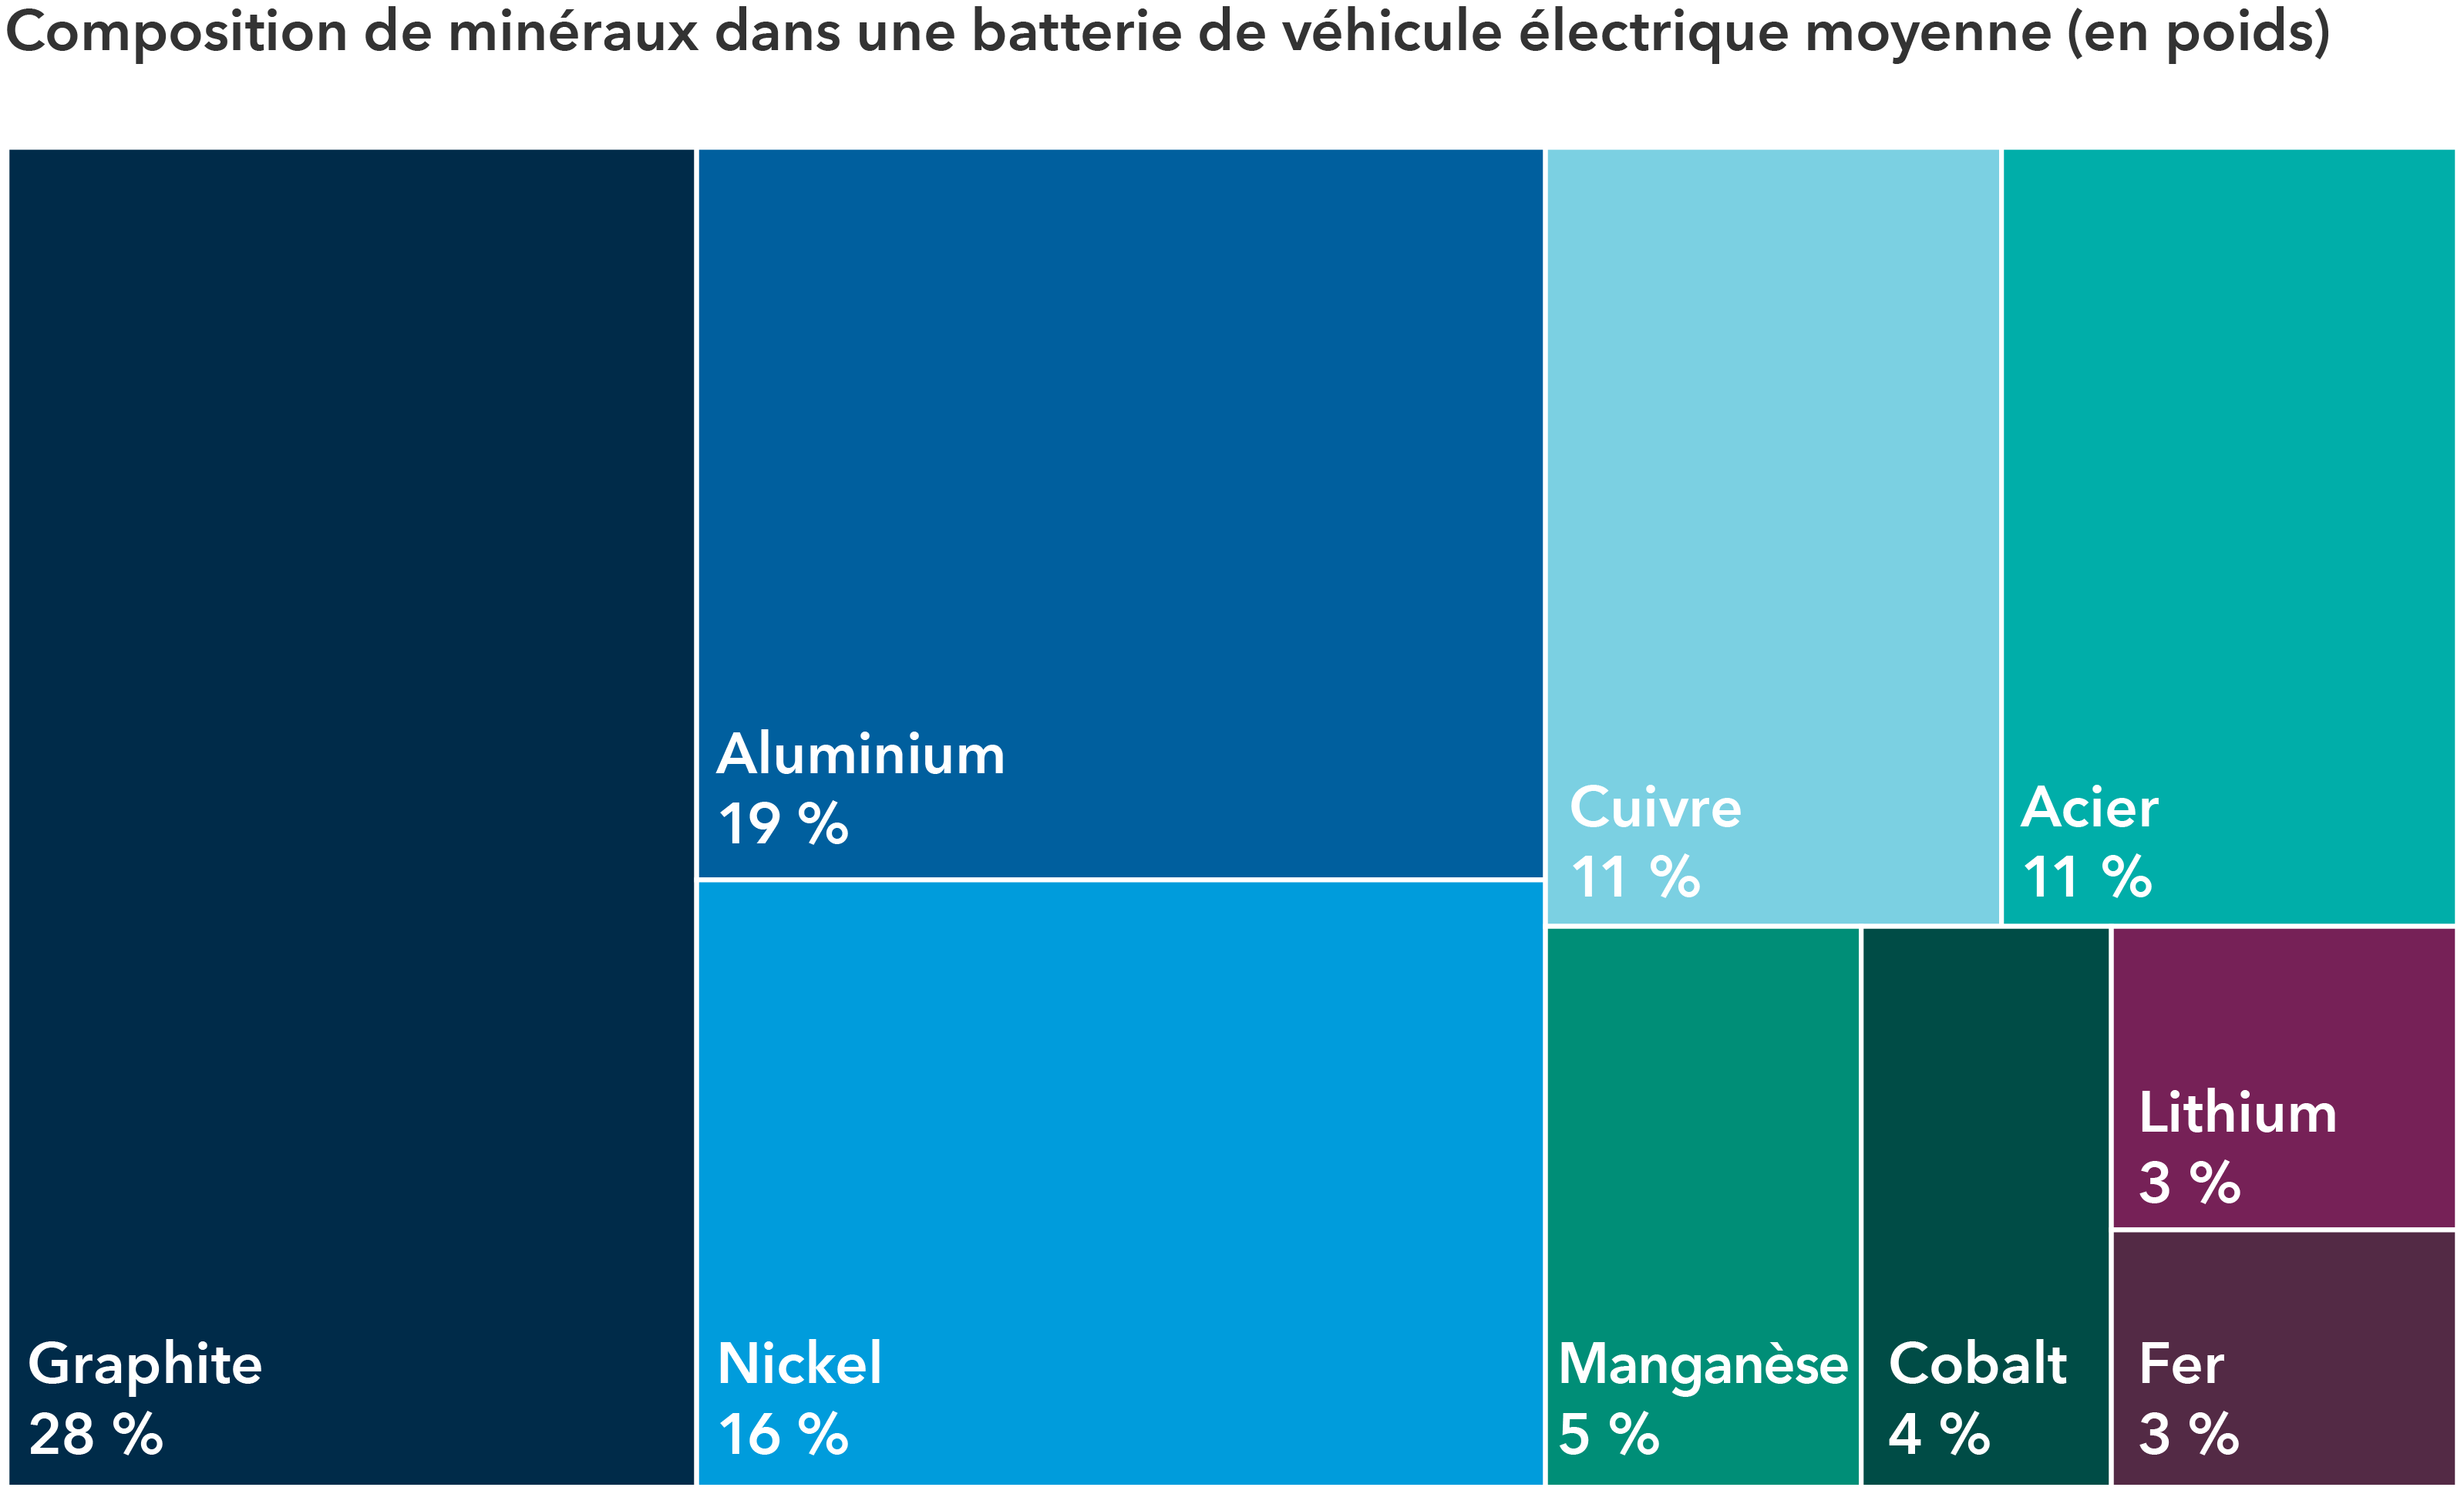  L’infographie présente le mélange de minéraux utilisés dans la batterie moyenne d’un véhicule électrique. Le graphite représente 28 %. L’aluminium représente 19 %. Le nickel représente 16 %. Le cuivre représente 11 %. L’acier représente 11 %. Le manganèse représente 5 %. Le cobalt représente 4 %. Le lithium représente 3 %. Le fer représente 3 %.